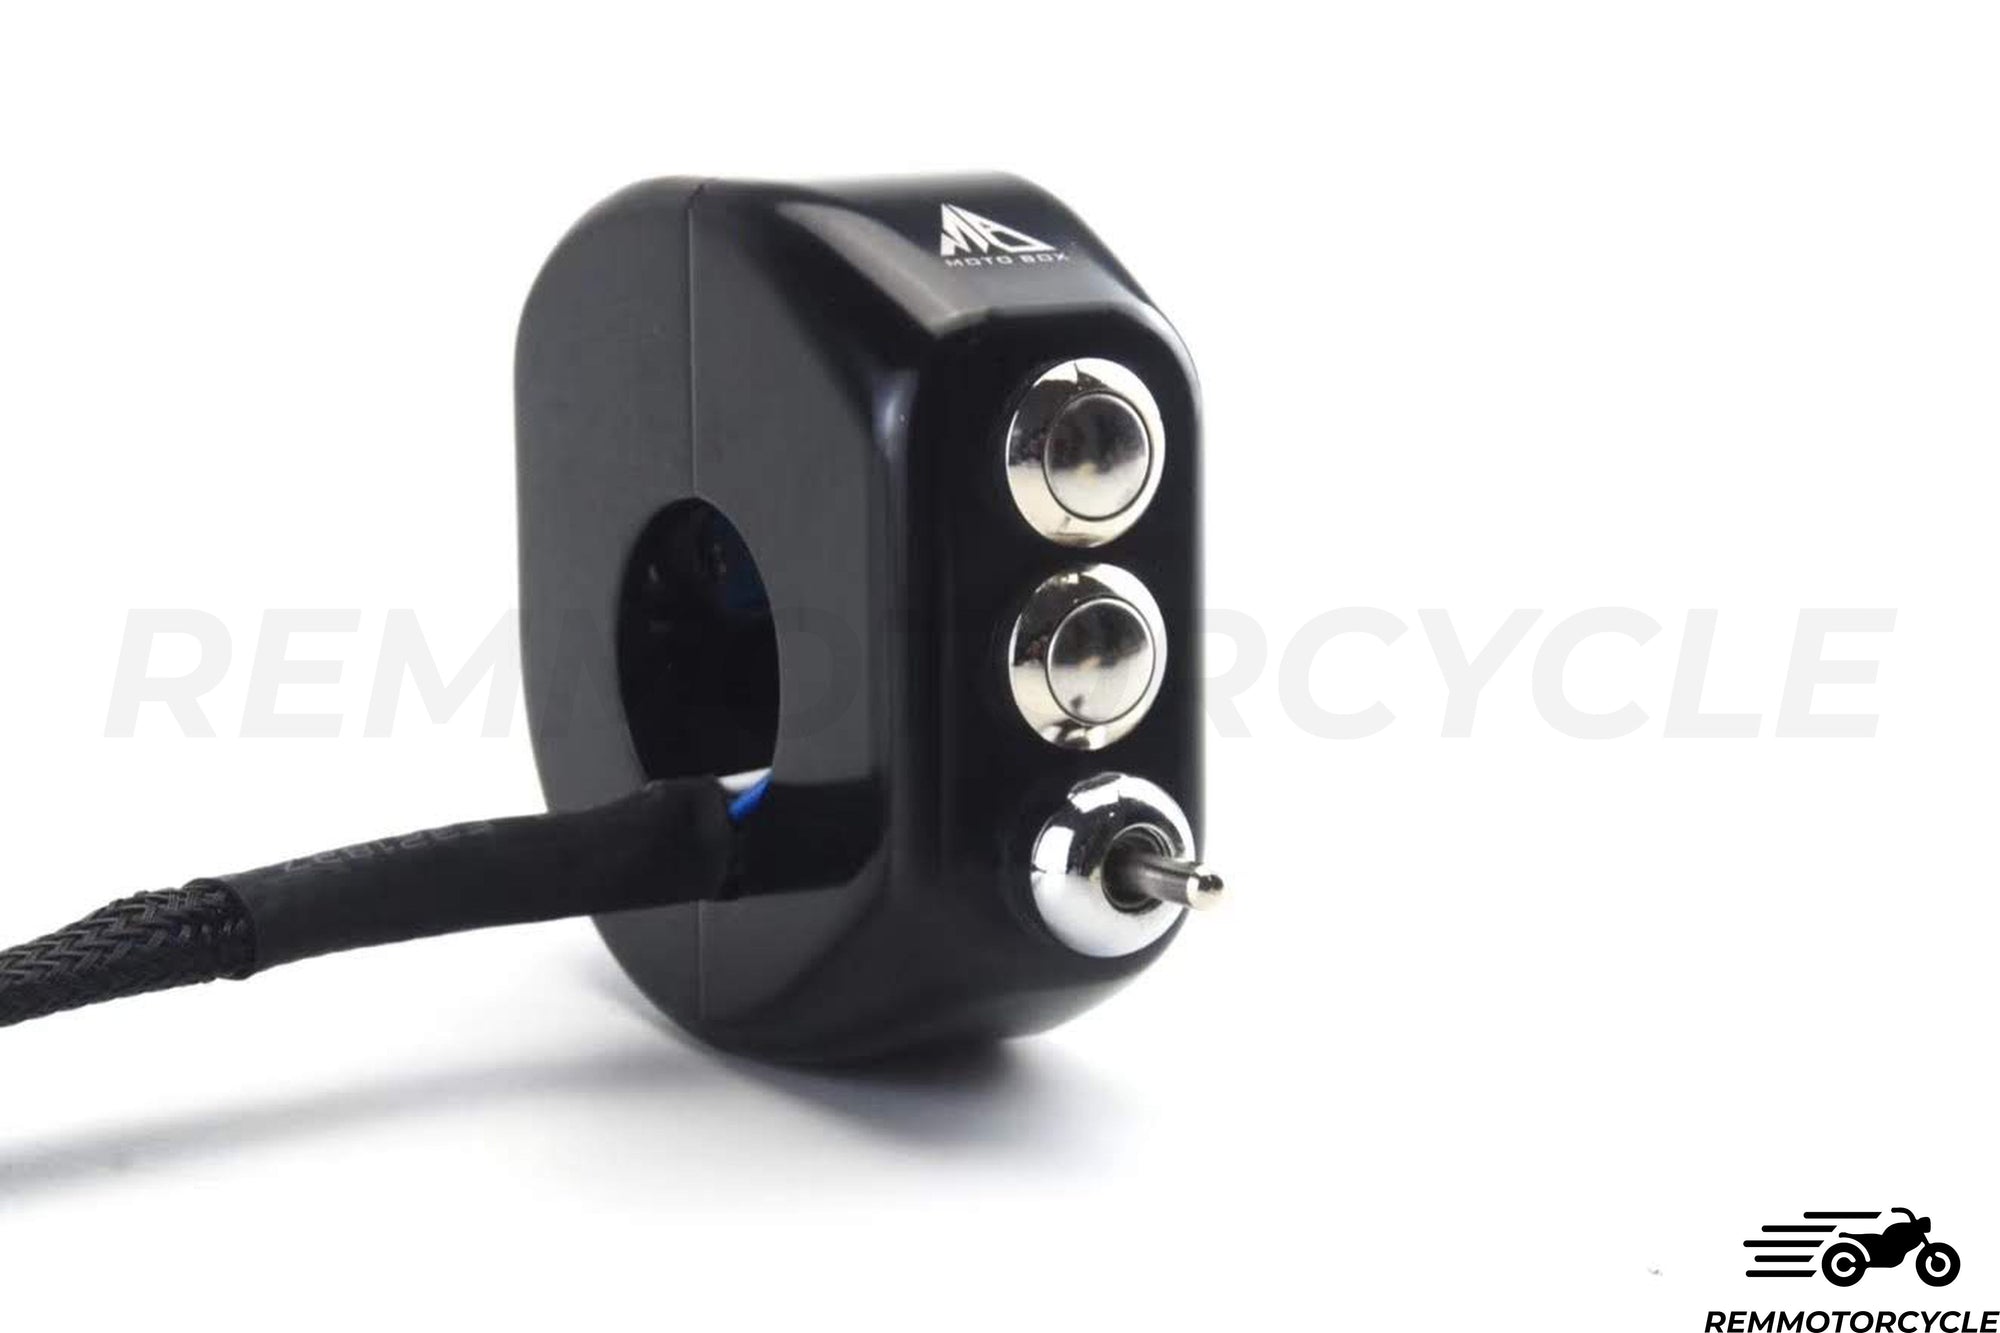 Commodo Moto CNC 3 -knappar + svarta eller silverindikatorer